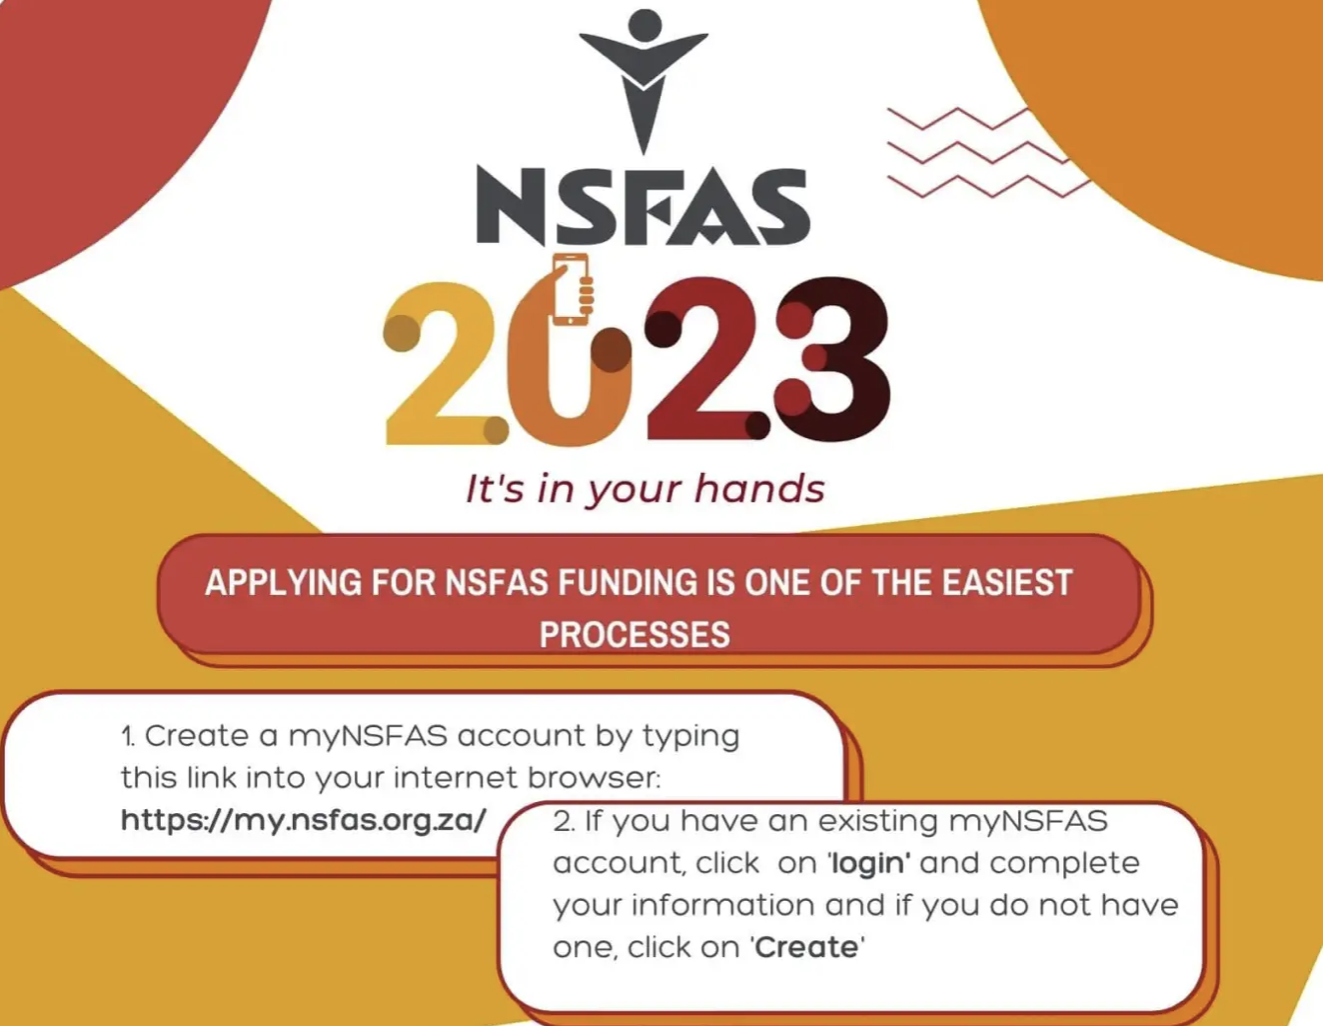 NSFAS 2023